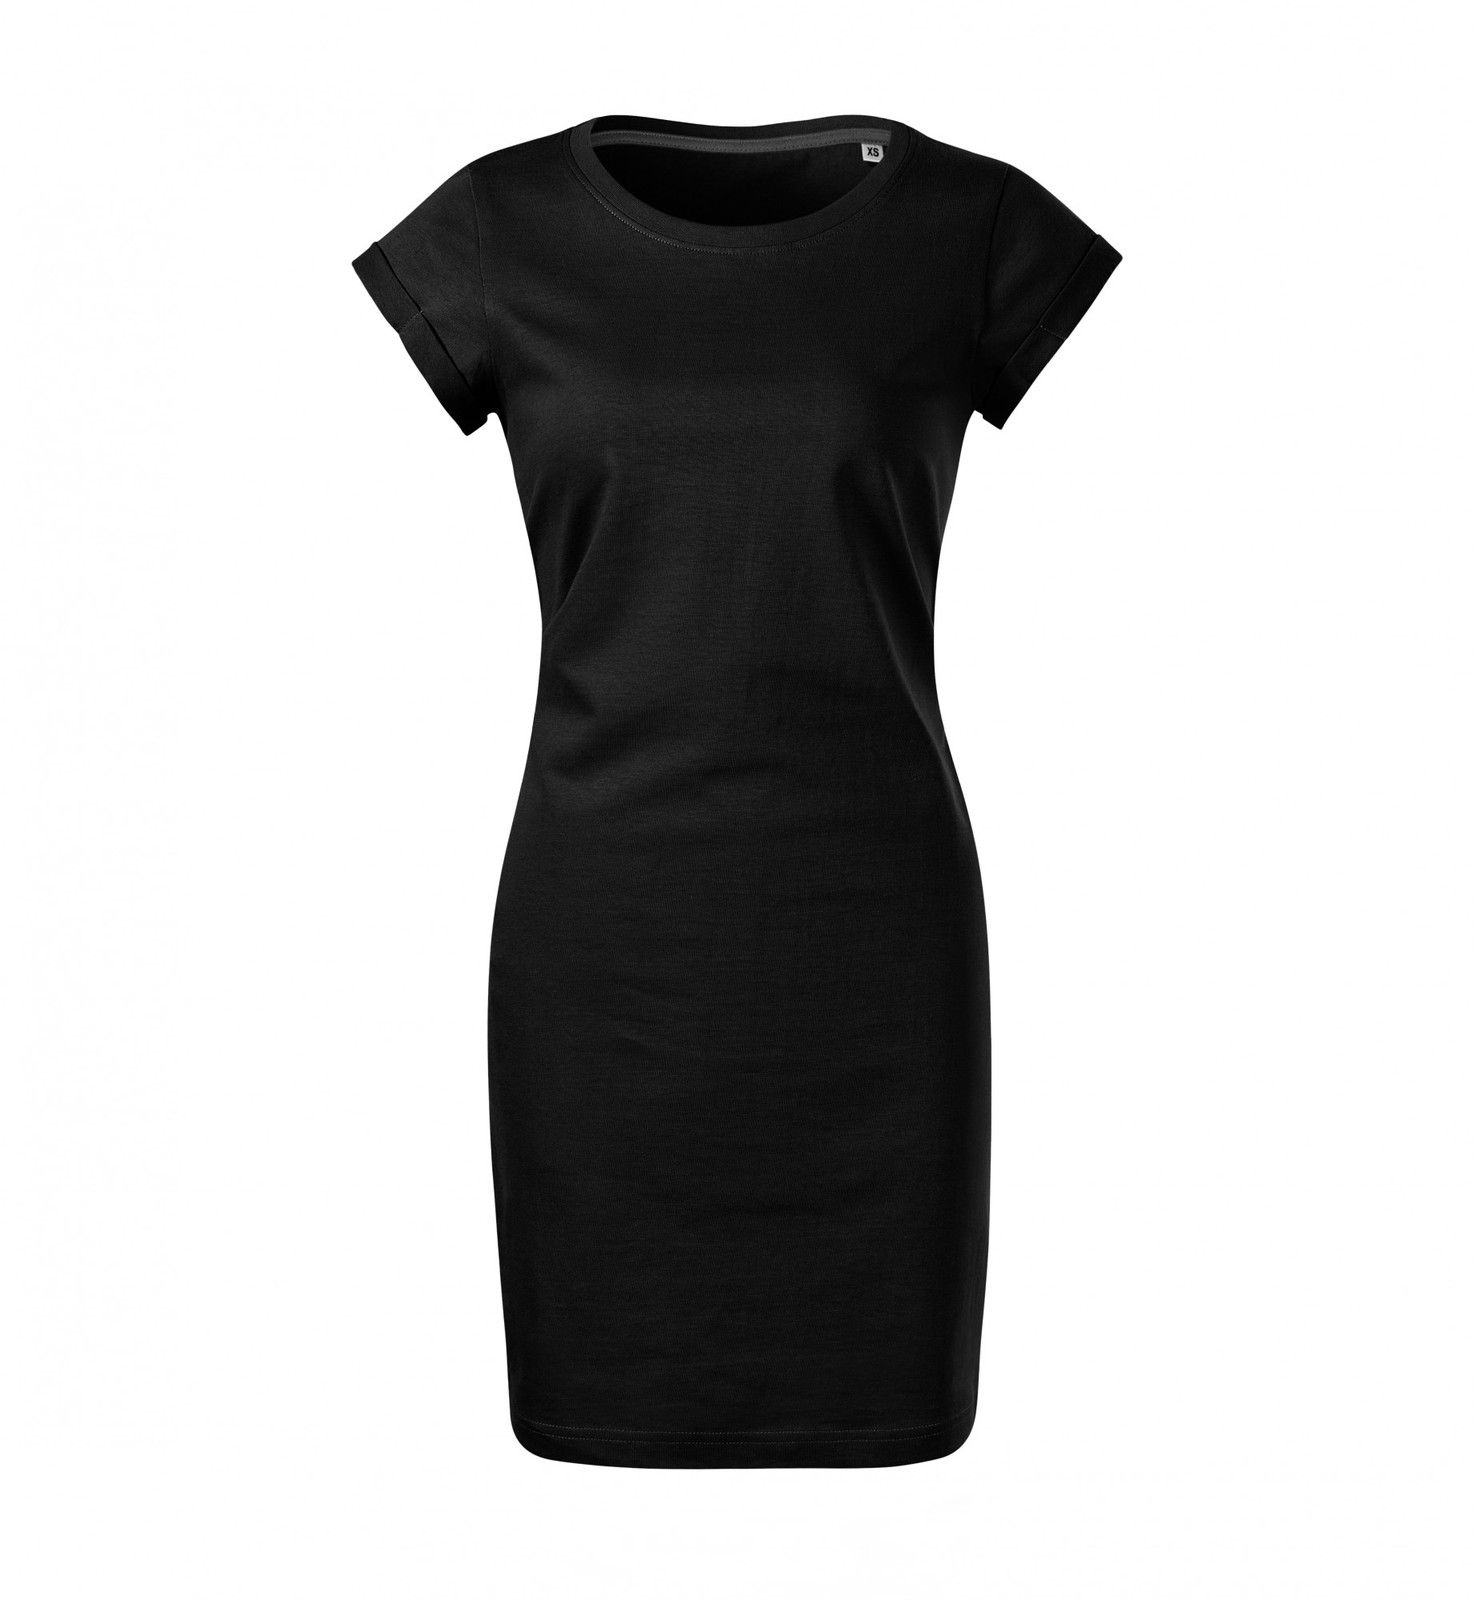 Dámske šaty Malfini Freedom 178 - veľkosť: M, farba: čierna